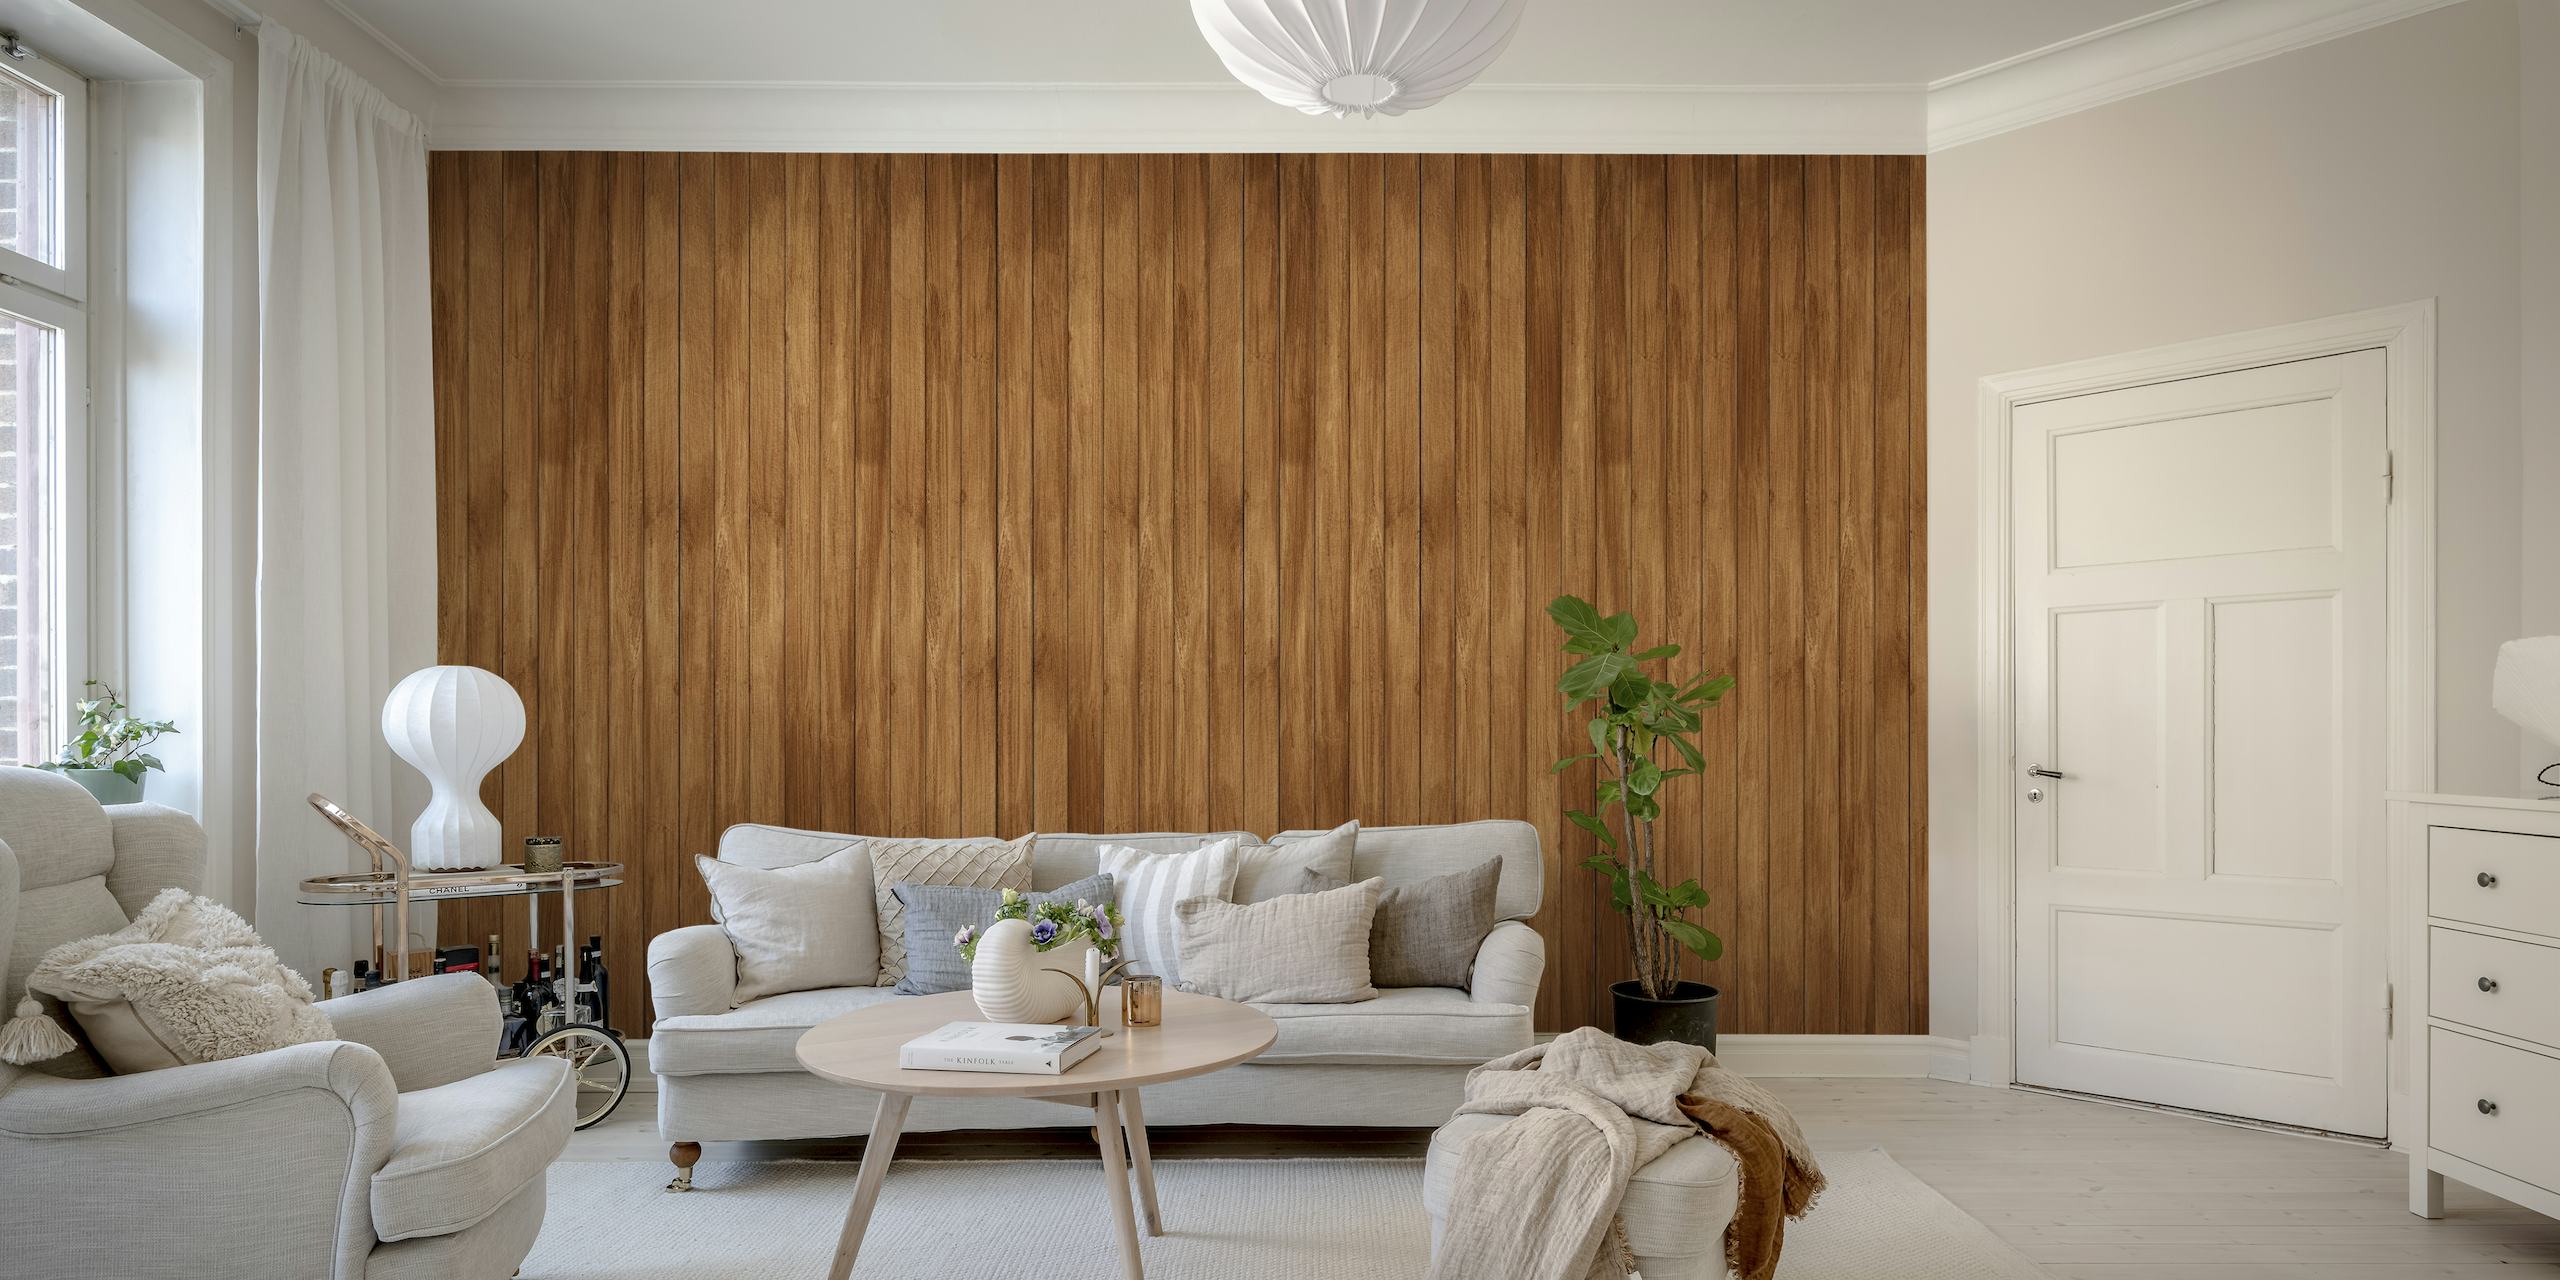 Fotomural vinílico de parede texturizado de madeira com tons ricos e quentes de marrom para decoração de interiores.